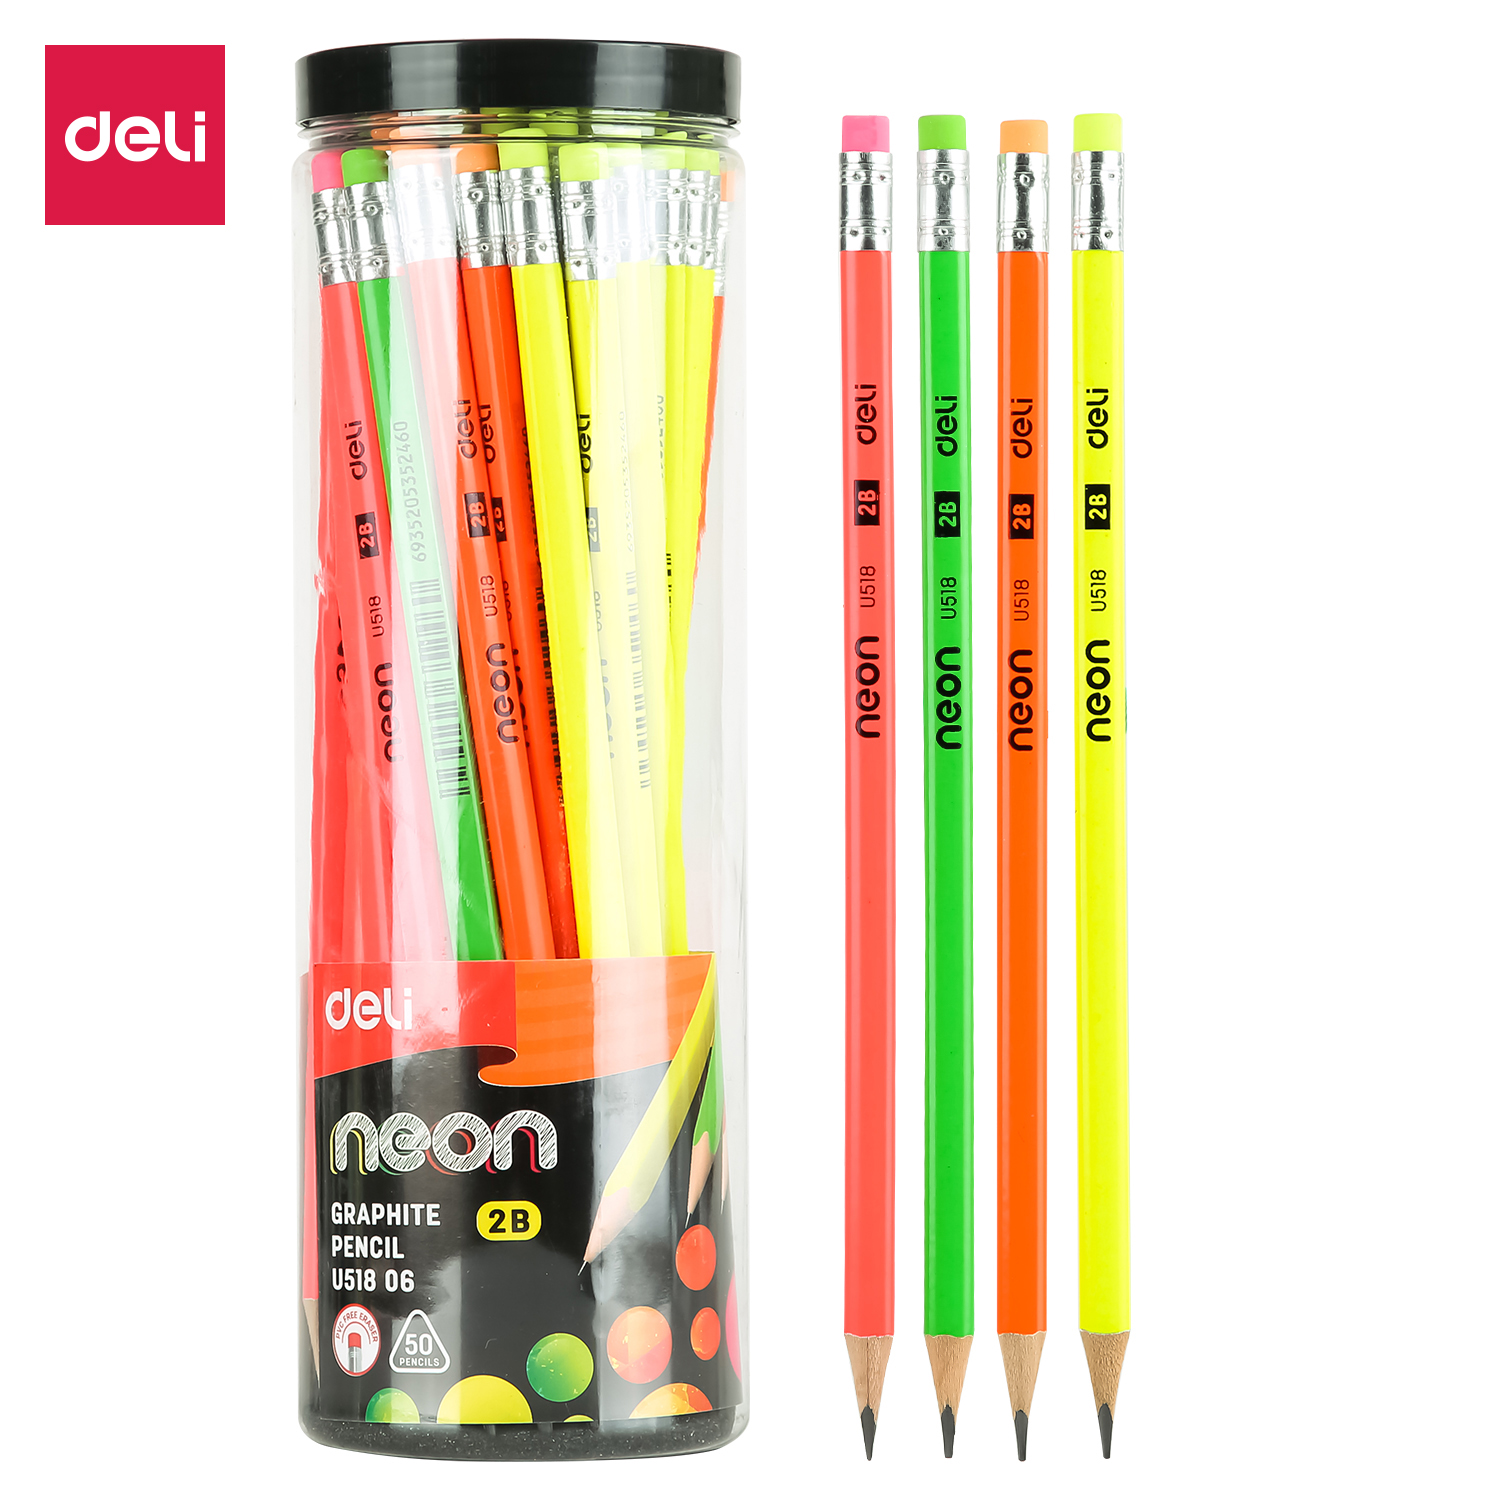 Deli-EU51806 Graphite Pencil